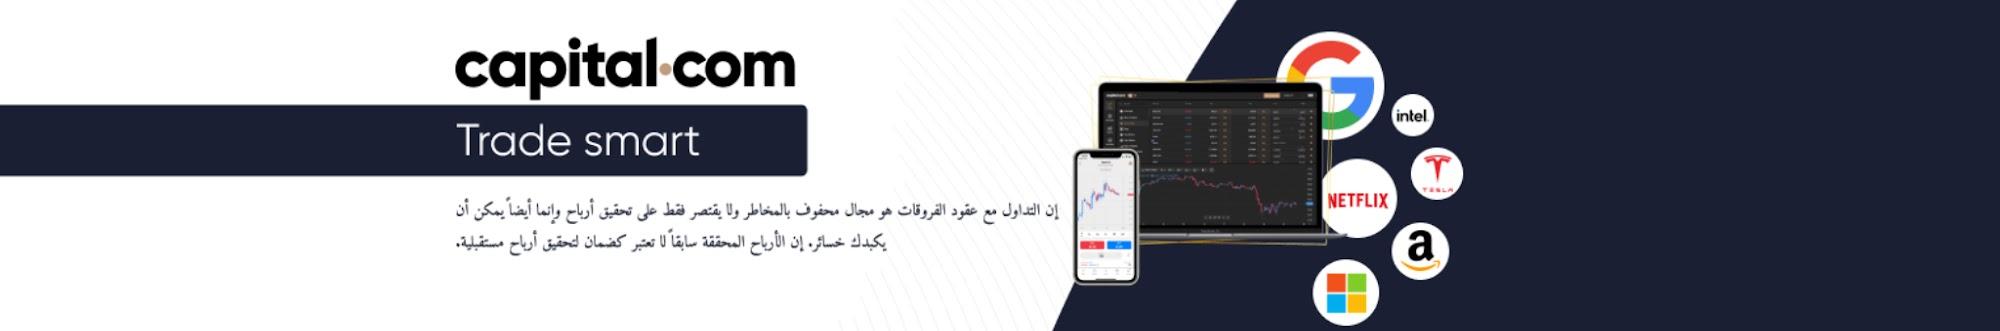 Capital.com. بالعربية